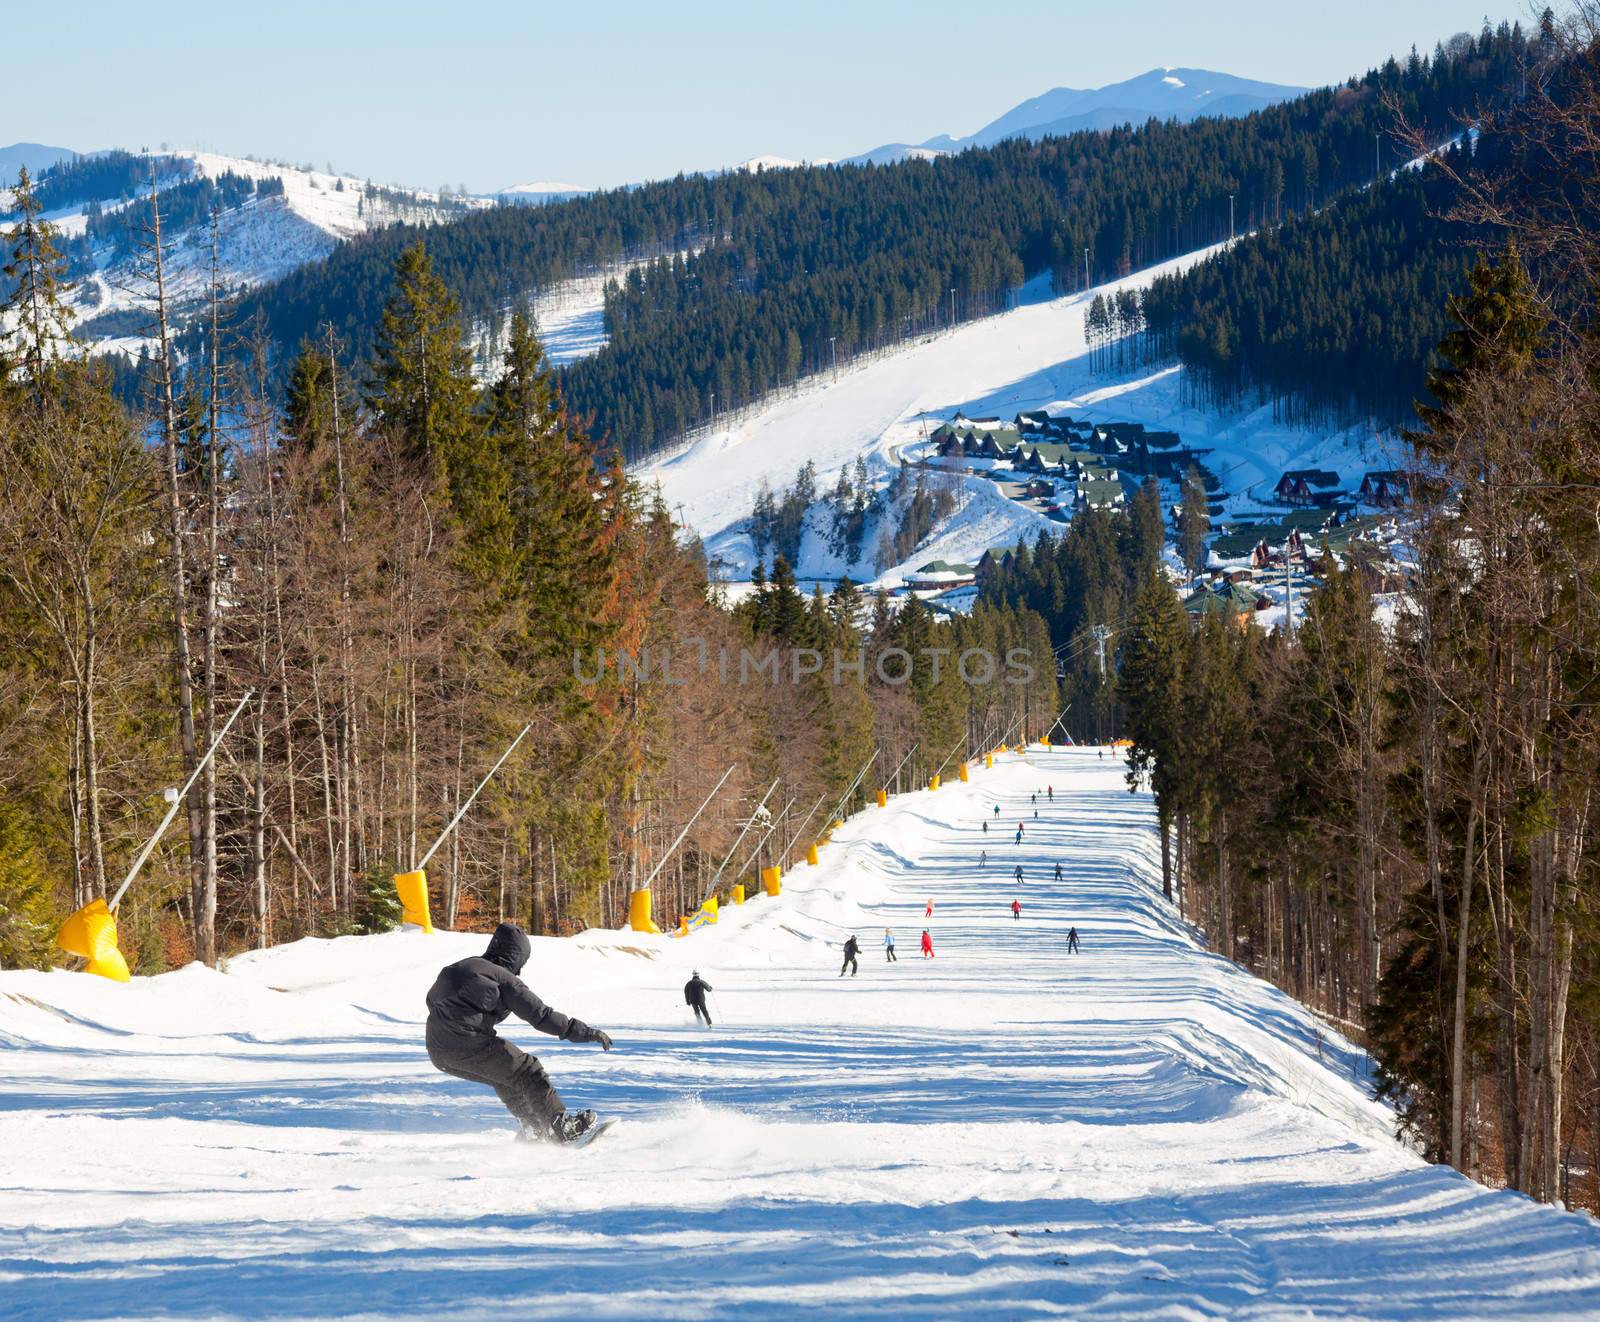 Snowborder going down the slope at ski resort